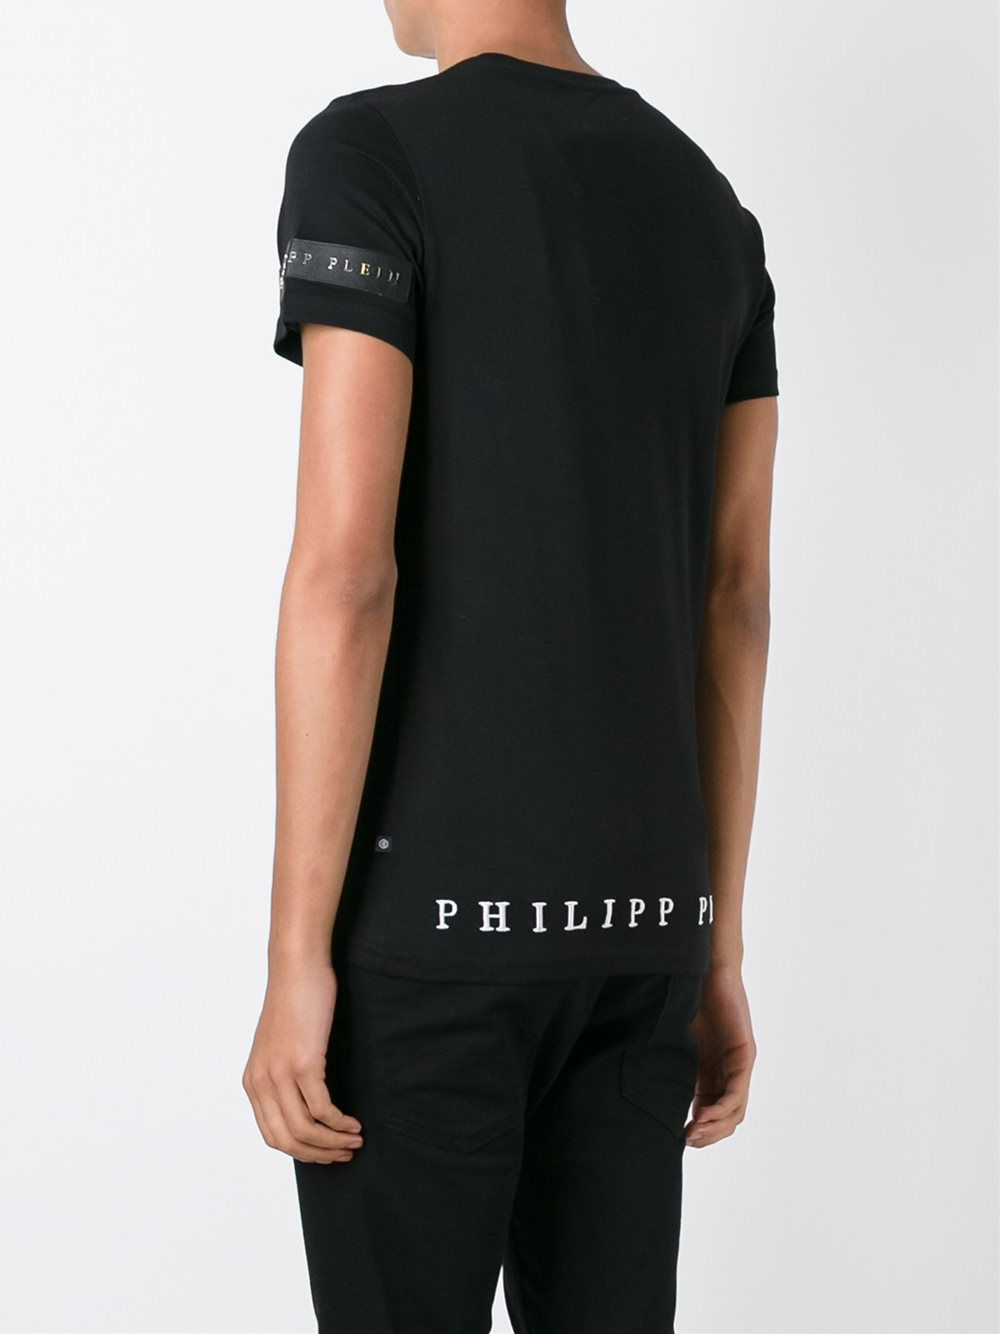 PHILIPP PLEIN Black Letters Men Casual T-shirt #P888019 M-3XL